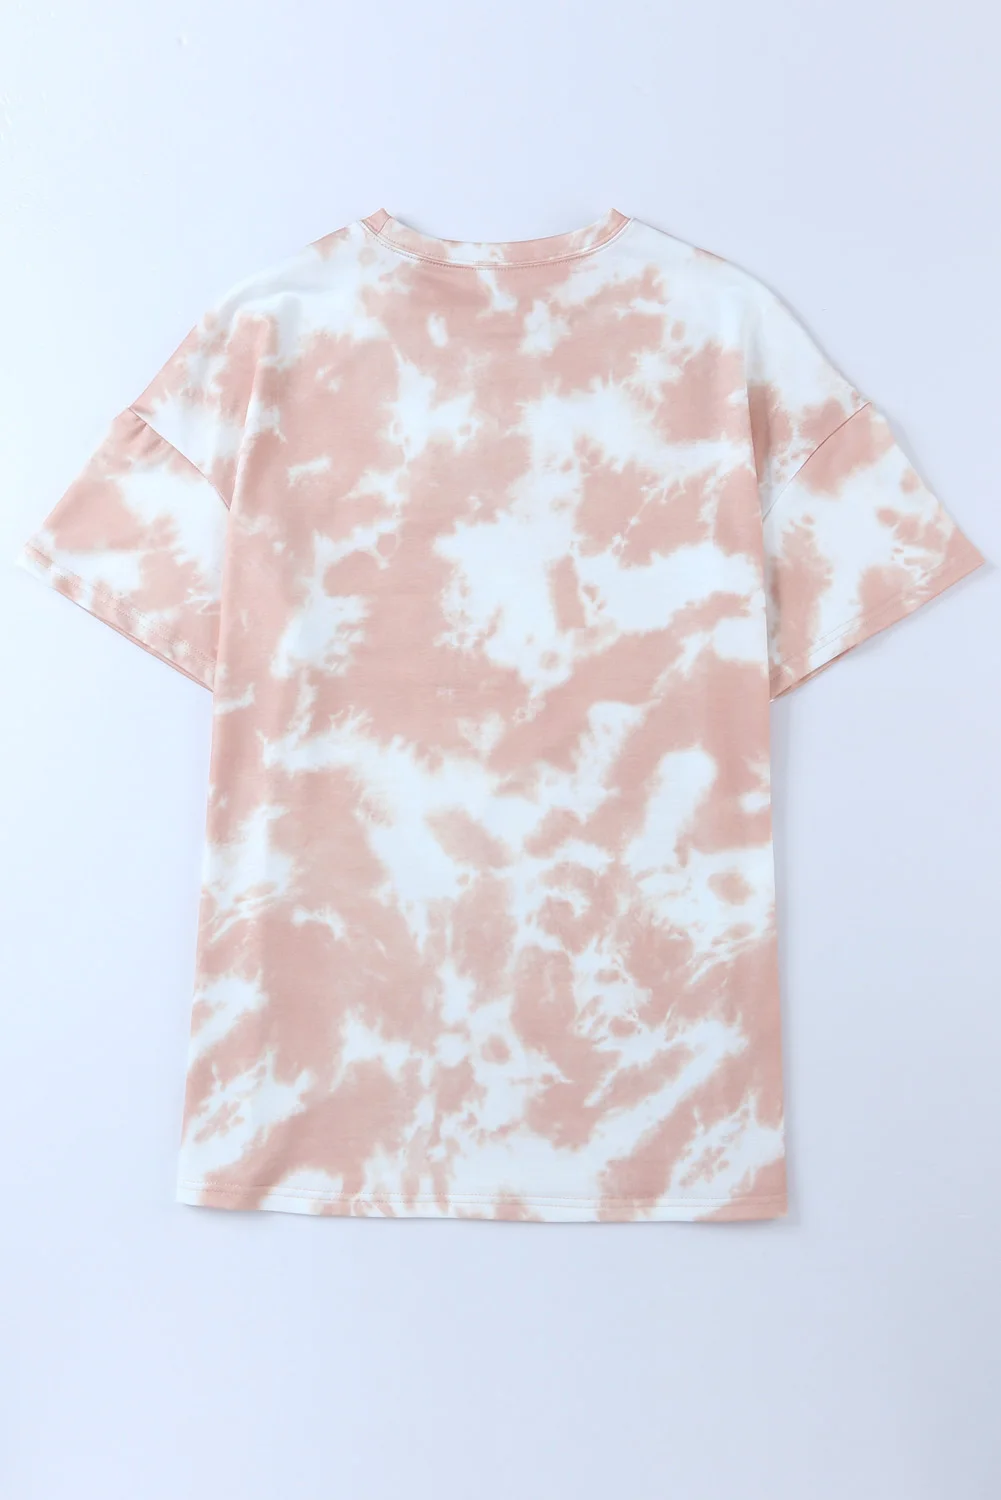 Dear-Lover Oem Custom Oversized Streetwear T-Shirt Tie Dye Graphic Designer Drop Shoulder T-Shirts for Women